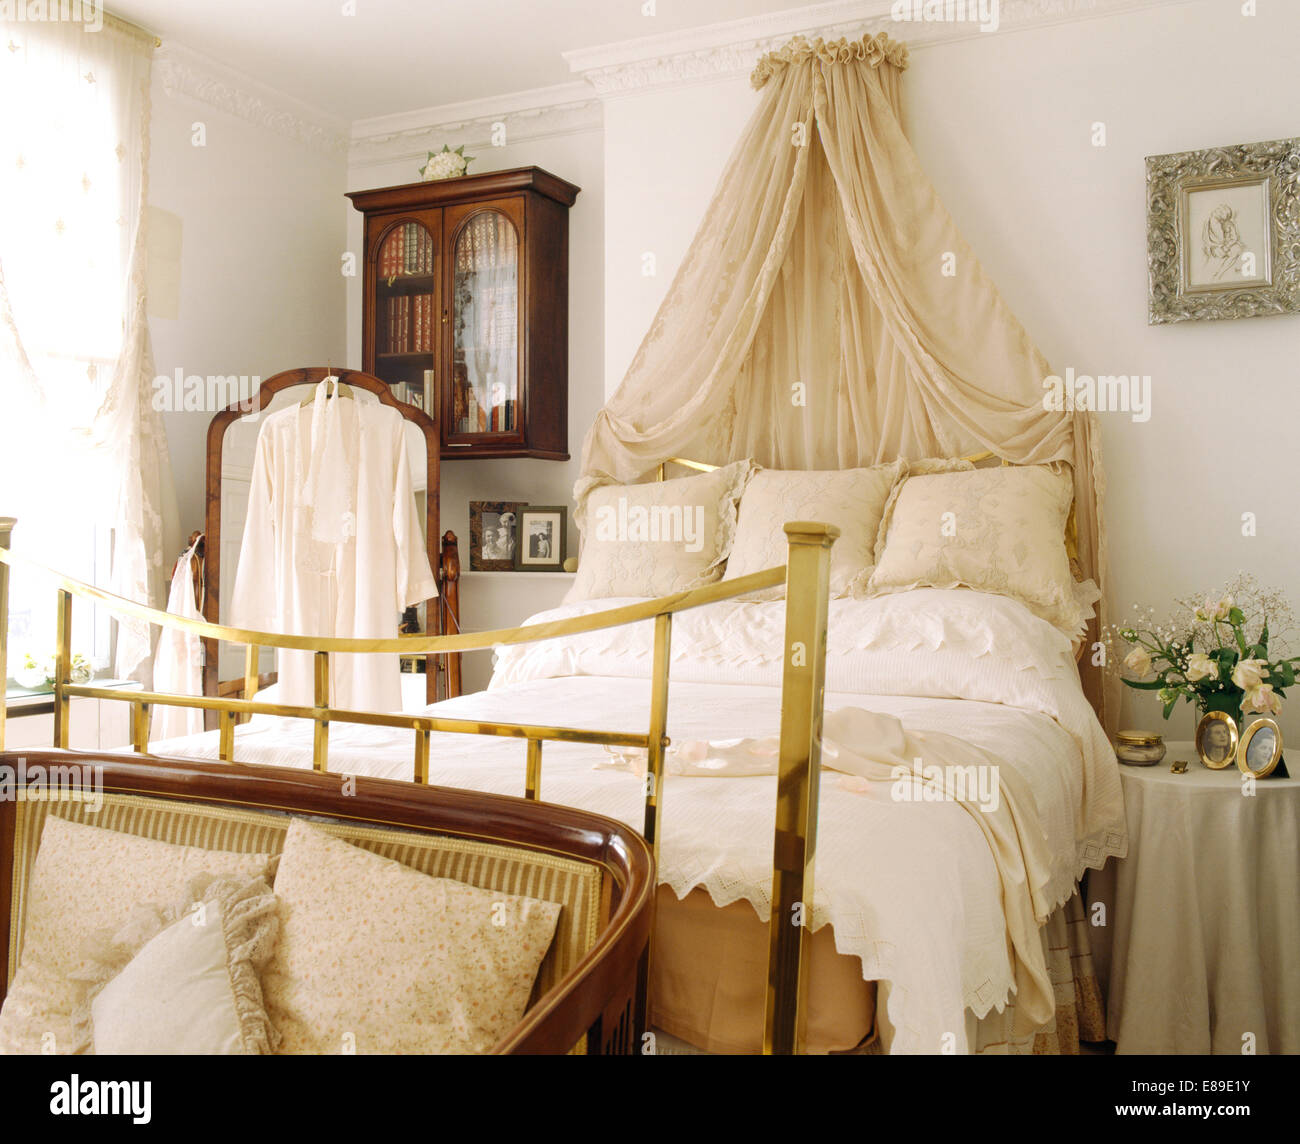 Coronet crème avec rideaux voile au-dessus de lit en laiton avec coussins crème et blanc duvet dans la chambre blanche Banque D'Images